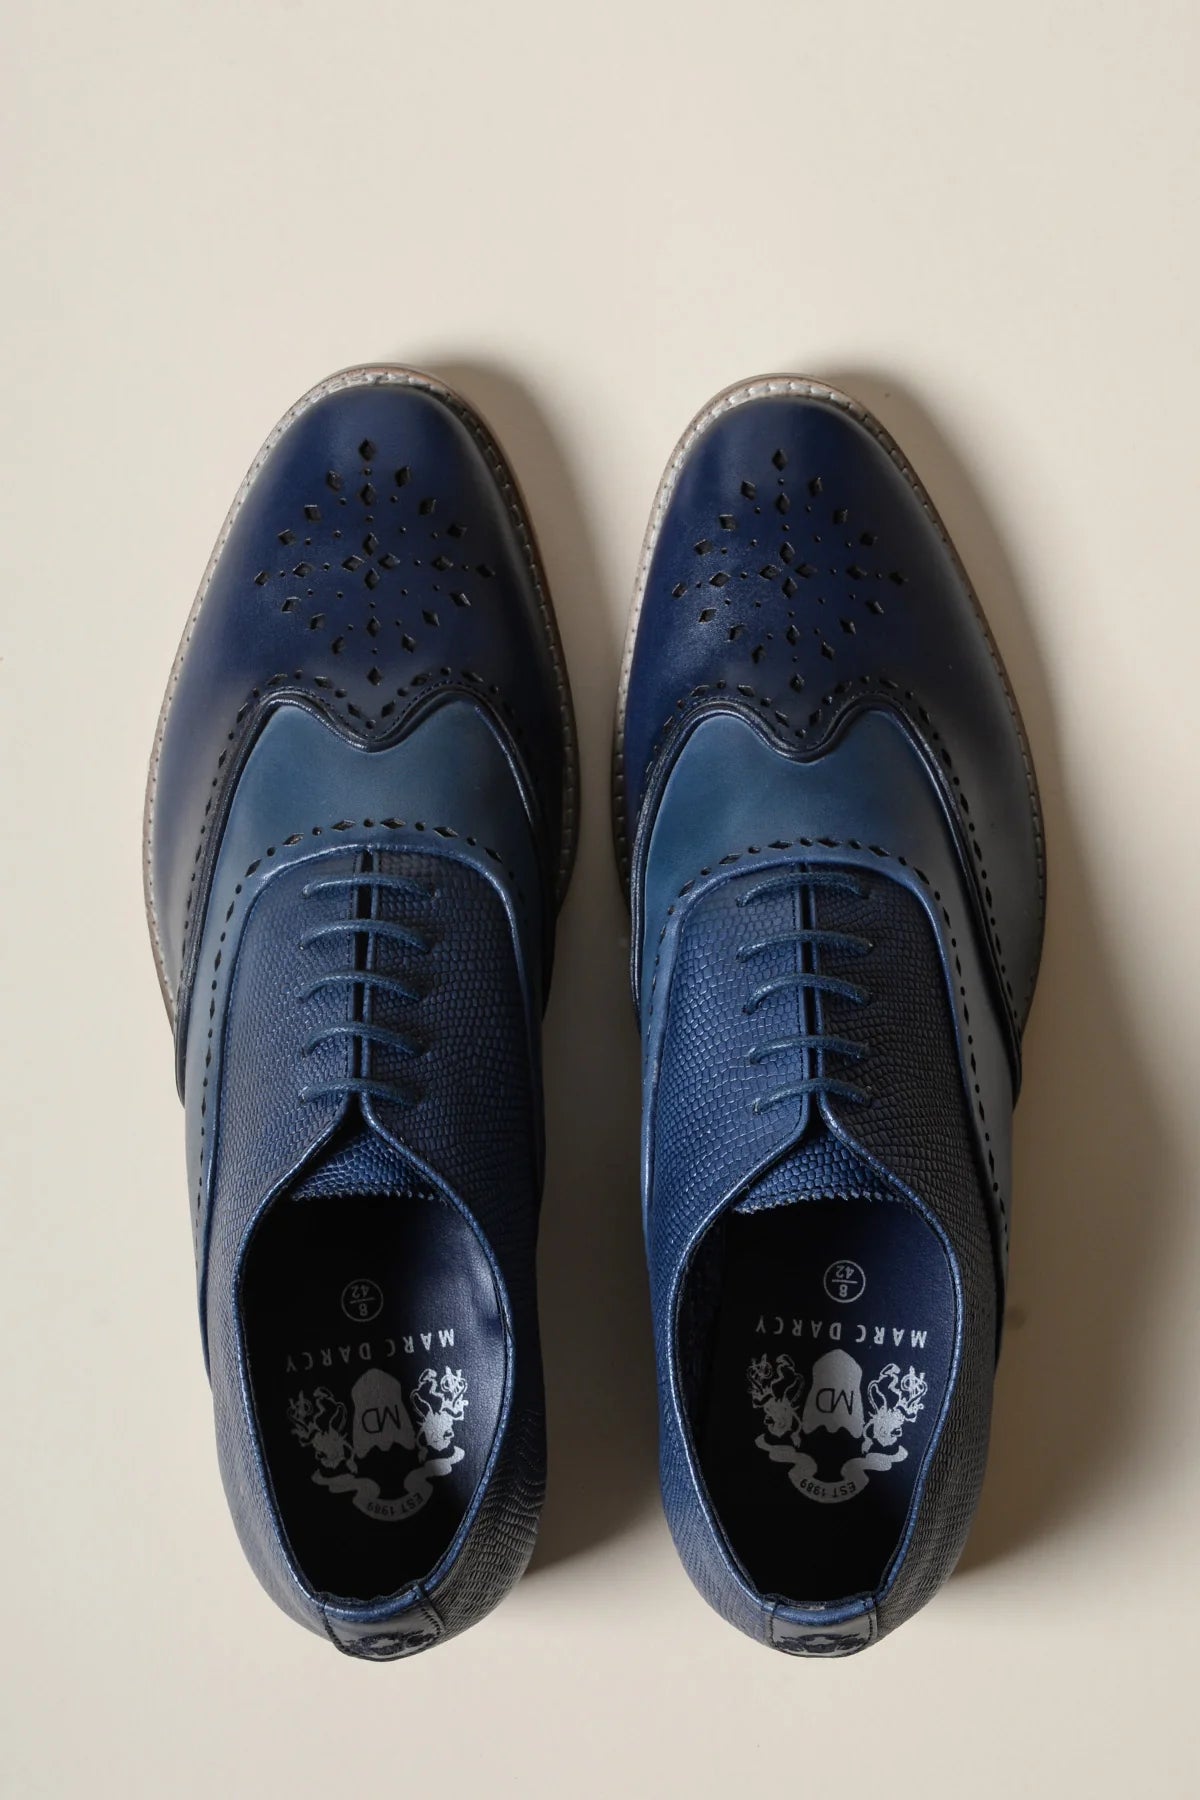 Chaussures en cuir blue marine Ryan Wingtip Brogues - Marc